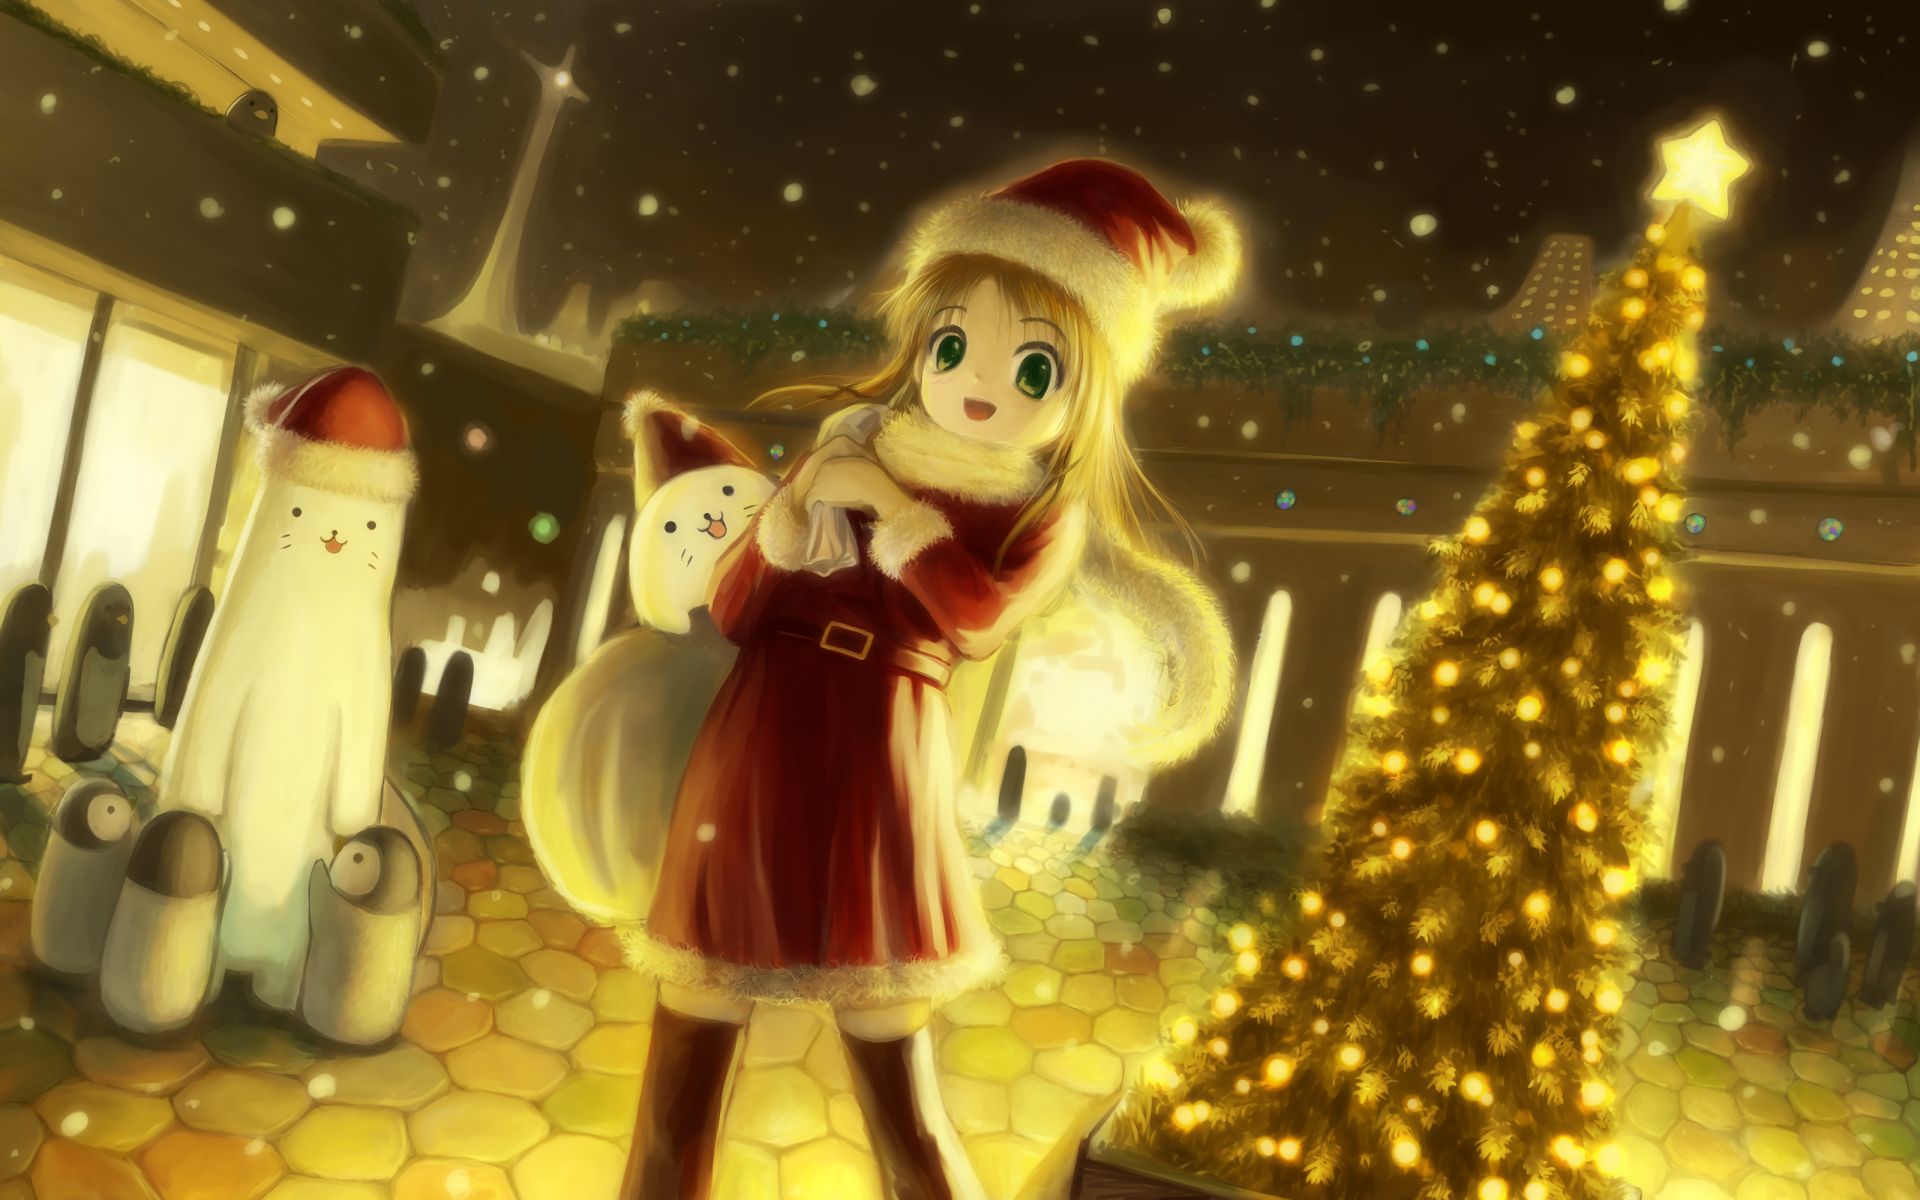 Anime & Manga / Christmas Episode - TV Tropes